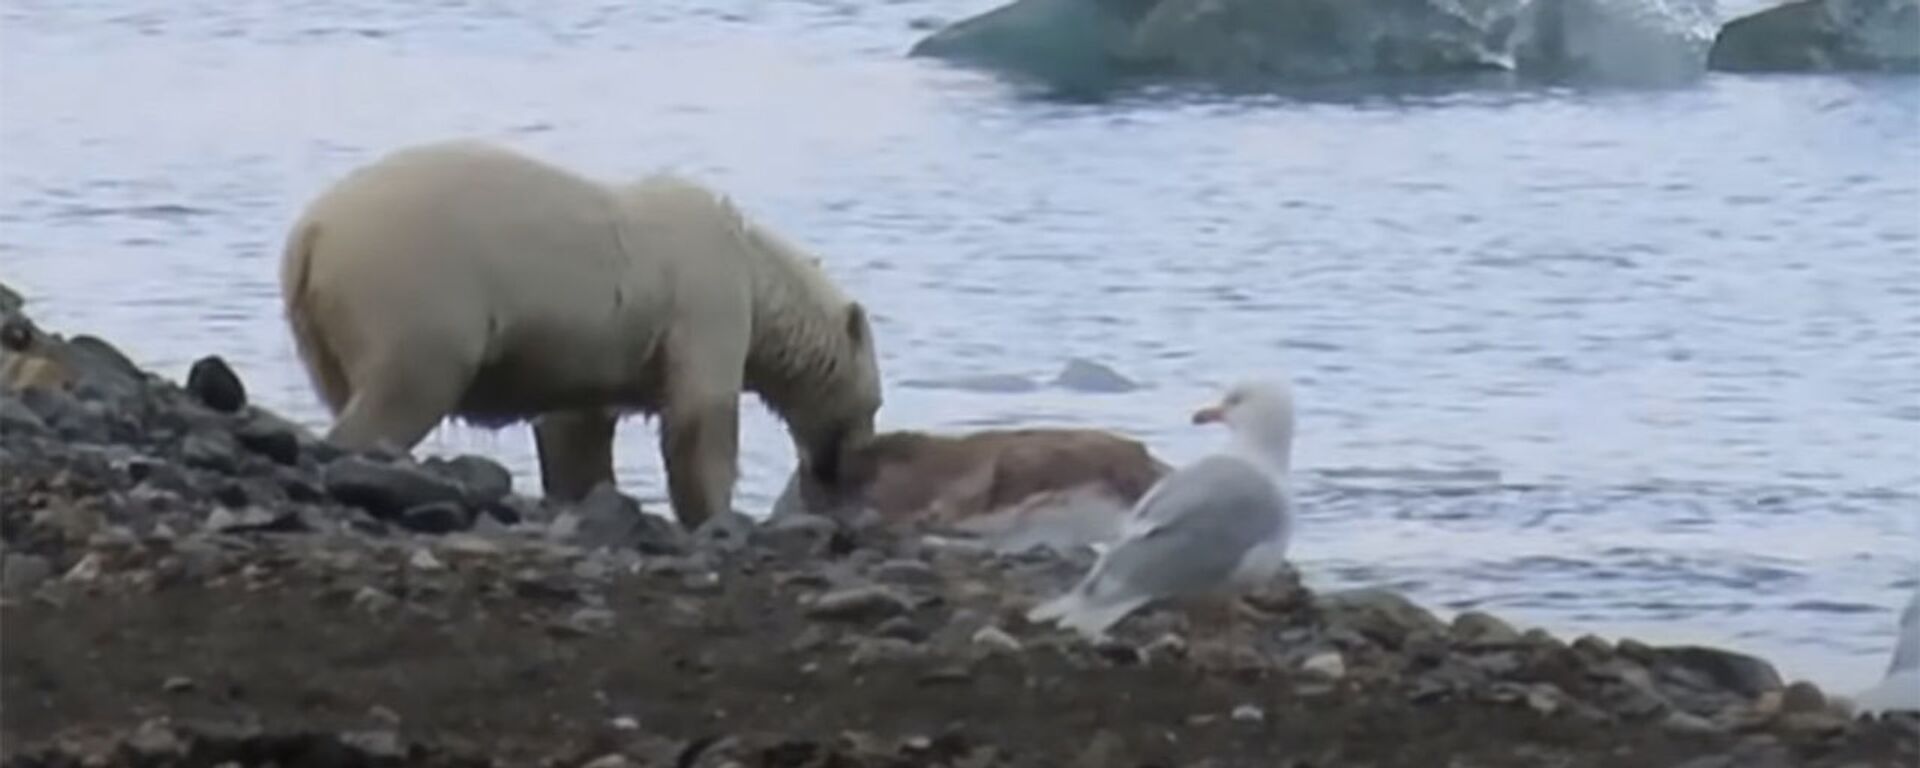 Опубликовано уникальное видео охоты белого медведя на оленя в воде - Sputnik Кыргызстан, 1920, 02.12.2021